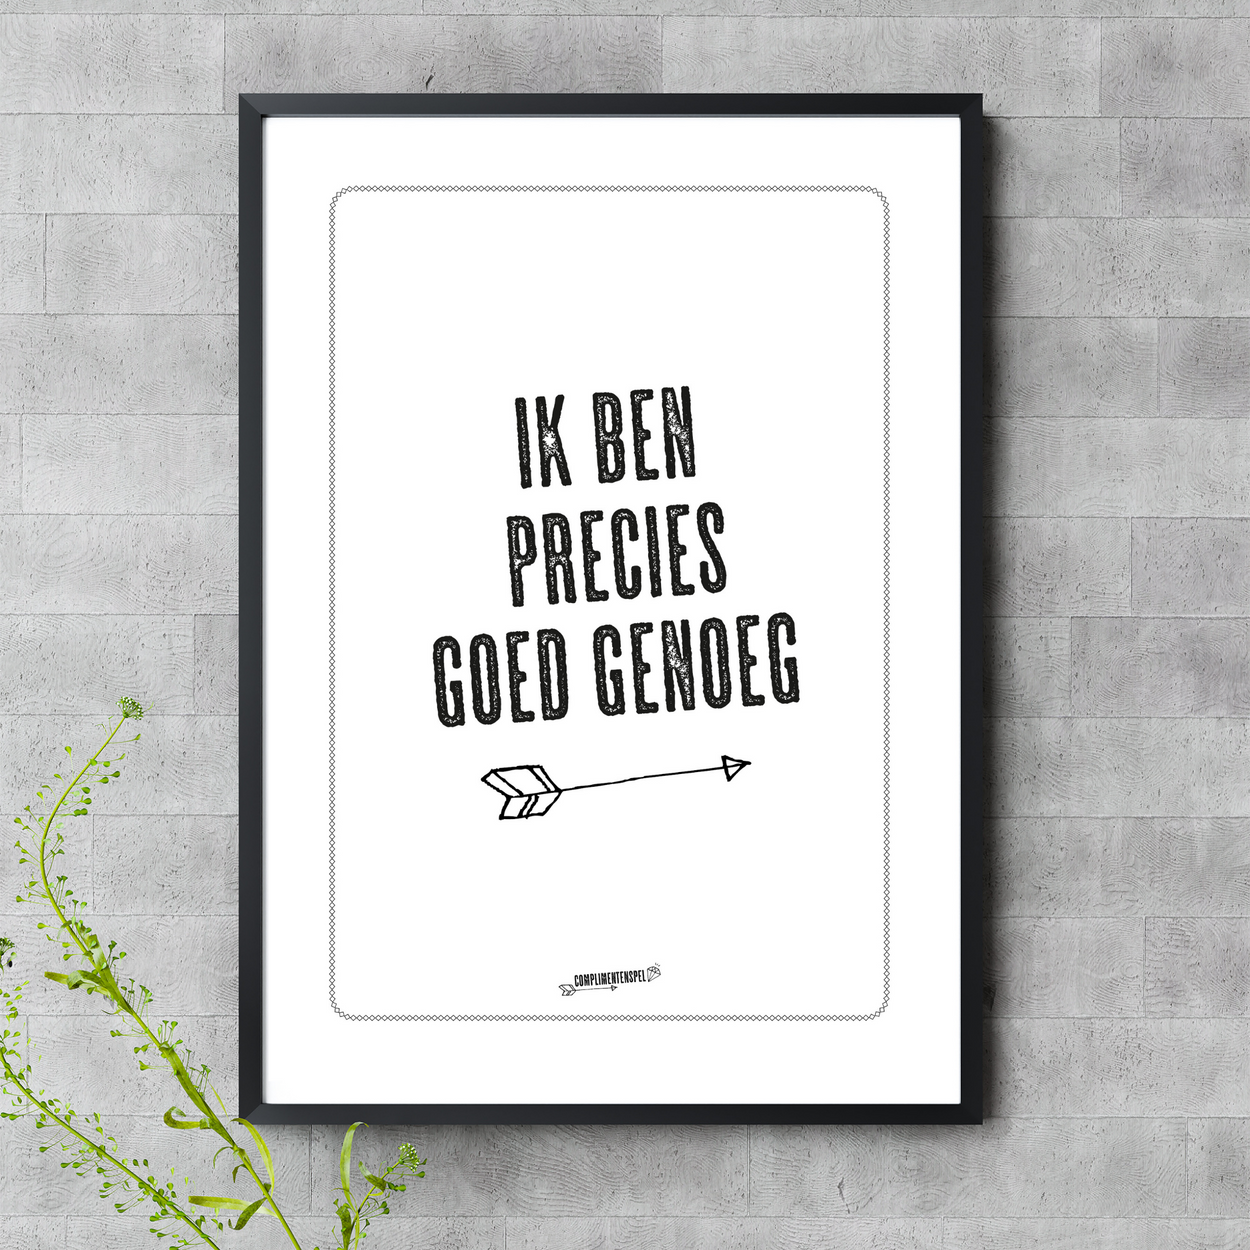 banaan Humoristisch typist Poster "Ik ben precies goed genoeg" — complimentenspel.nl